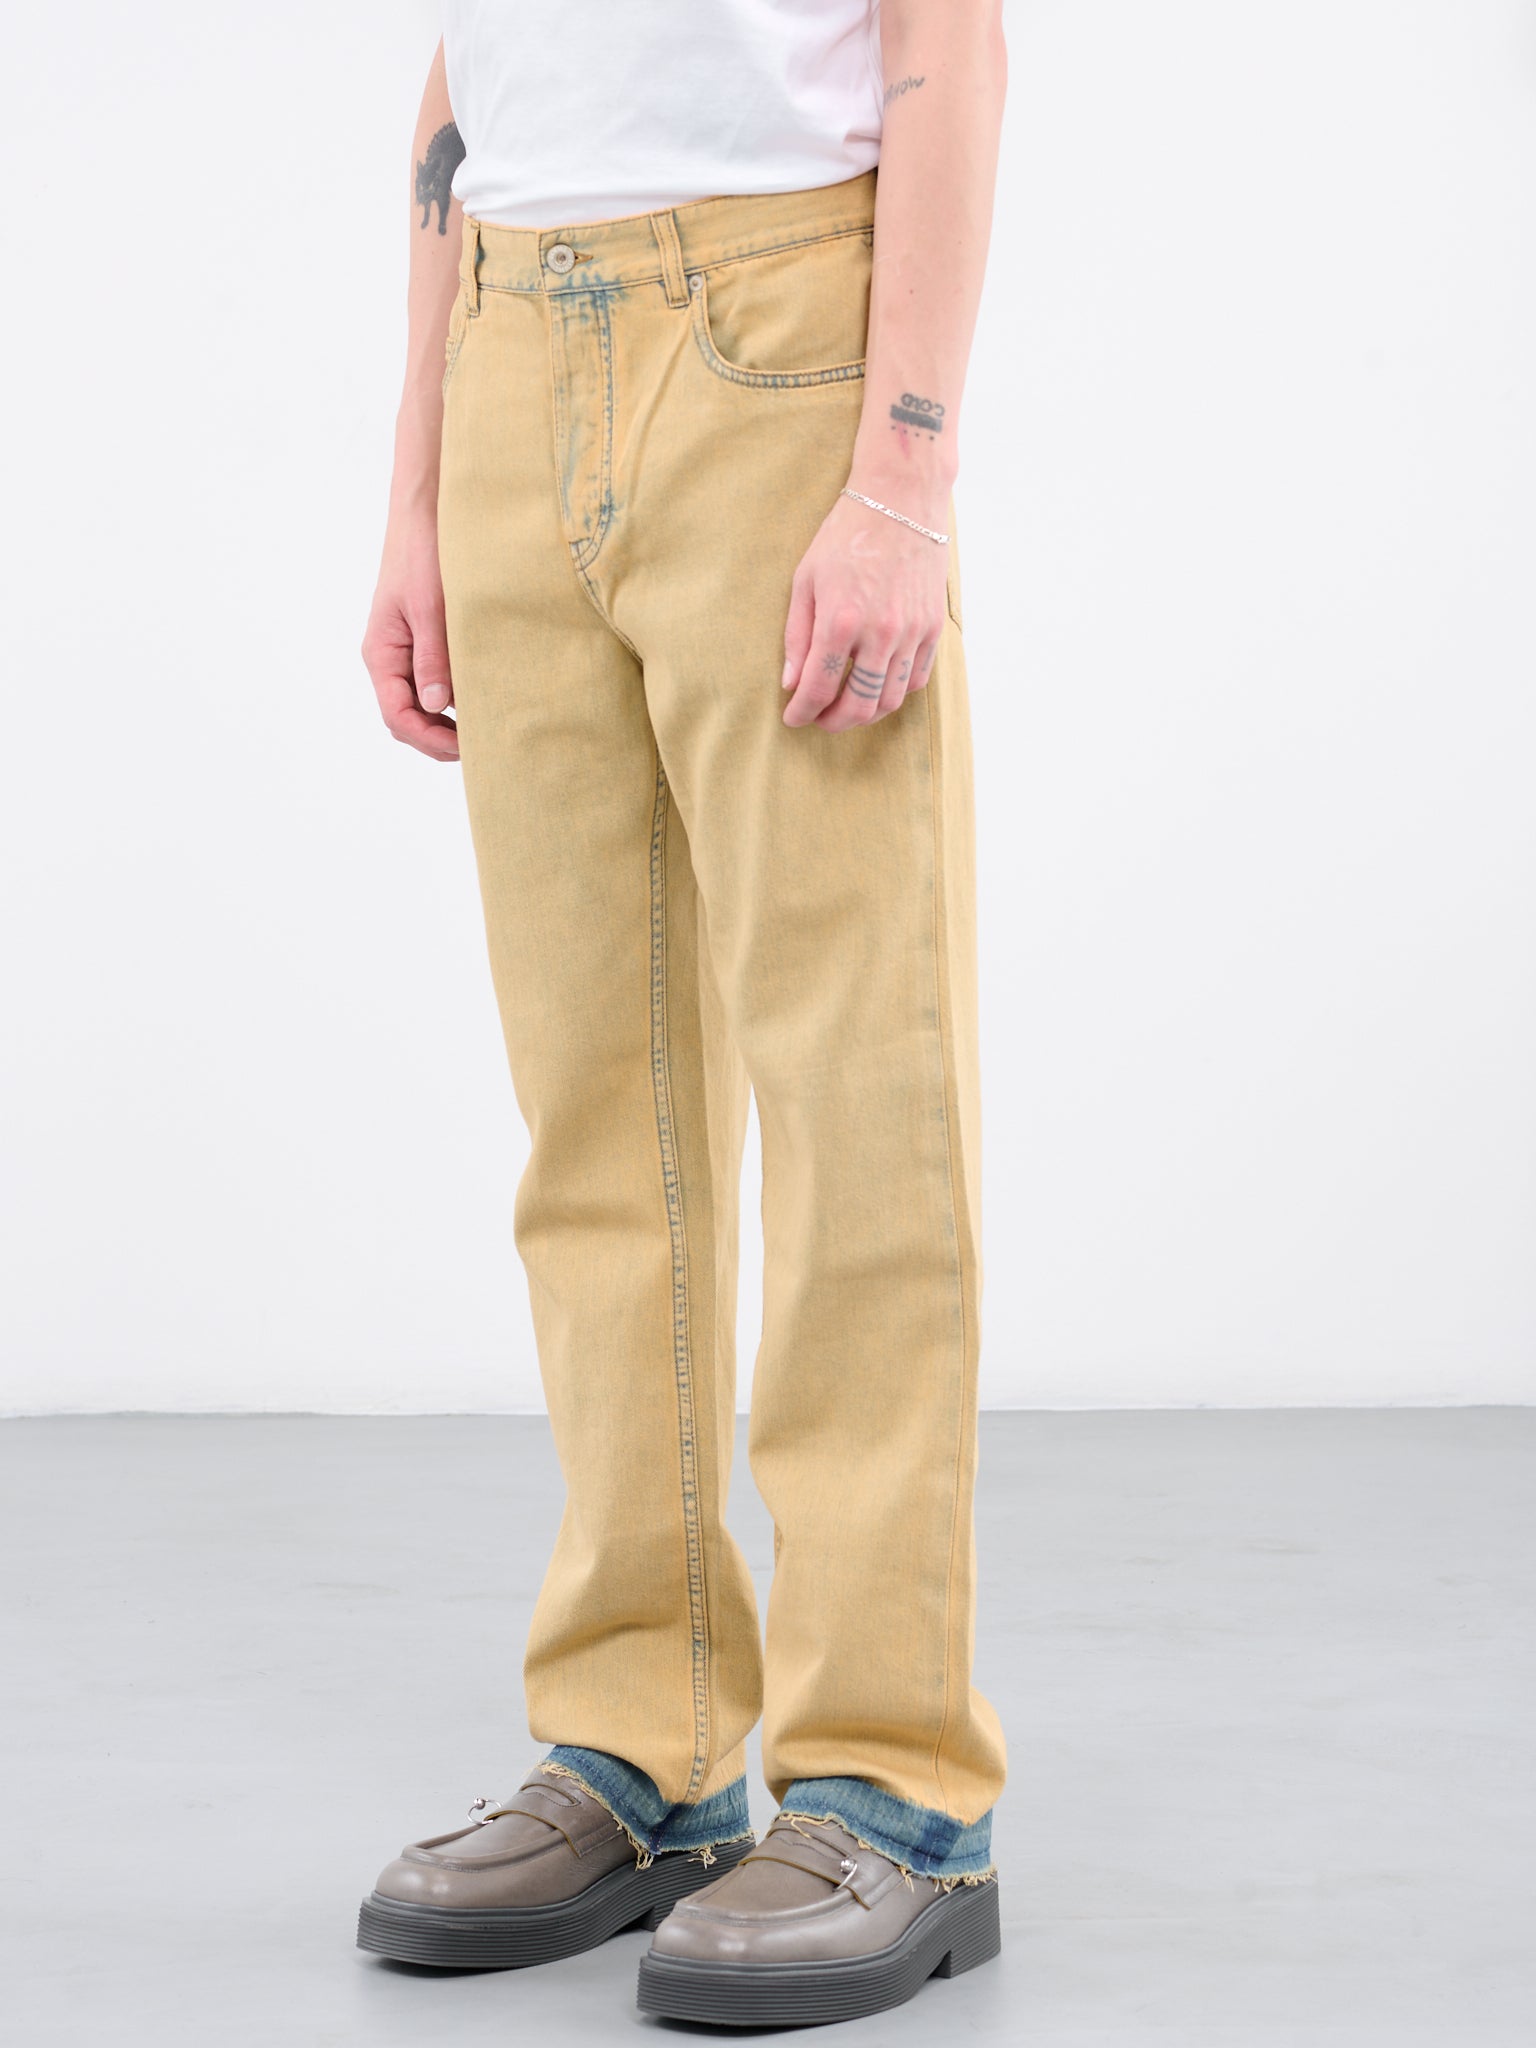 LOEWE Dyed Denim Pants | H.Lorenzo - side